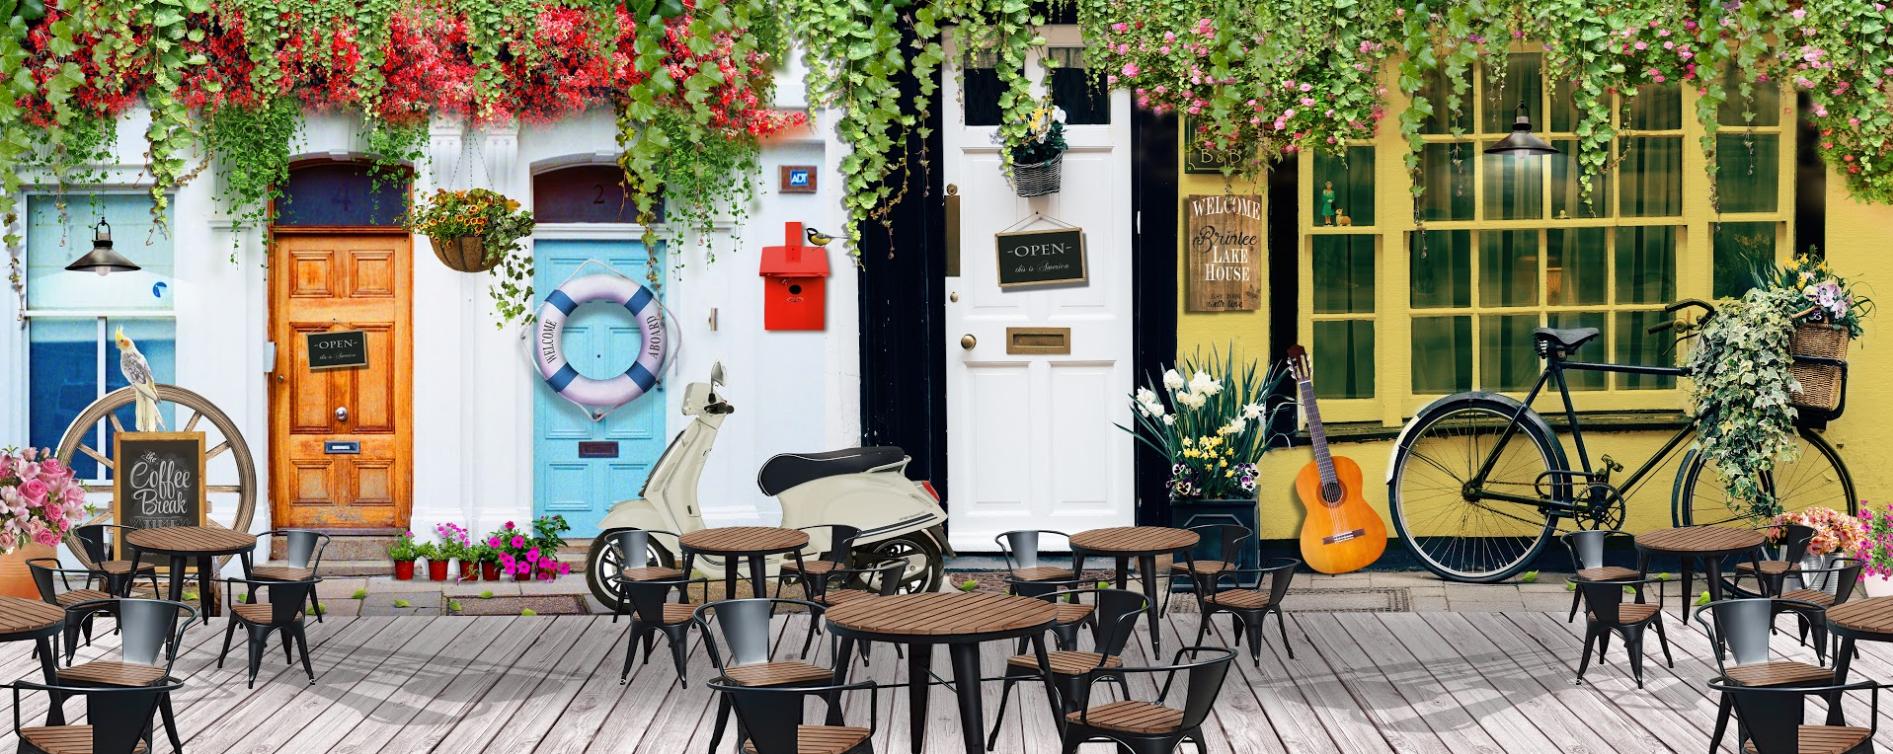 Tranh trang trí cho quán cà phê có thể là một mảng trang trí kiểu dáng, màu sắc và cảm xúc. Tranh có thể góp phần làm nổi bật không gian quán cà phê của bạn, cải thiện không gian, tạo ra một môi trường thư giãn và ấm cúng cho khách hàng.